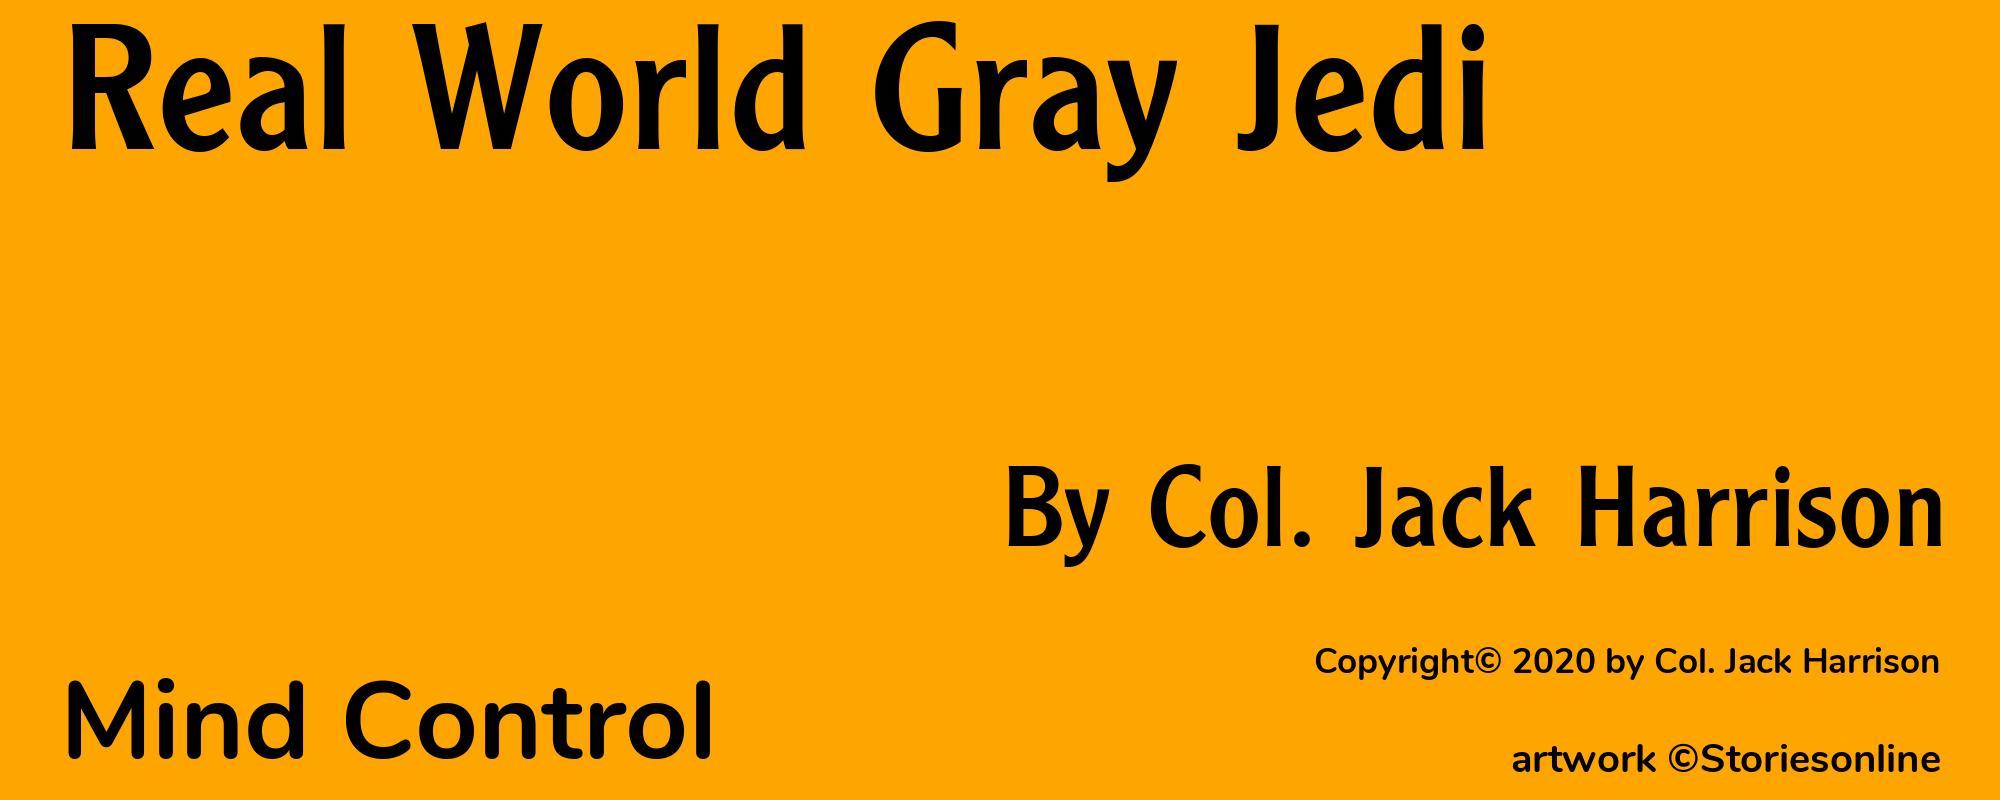 Real World Gray Jedi - Cover